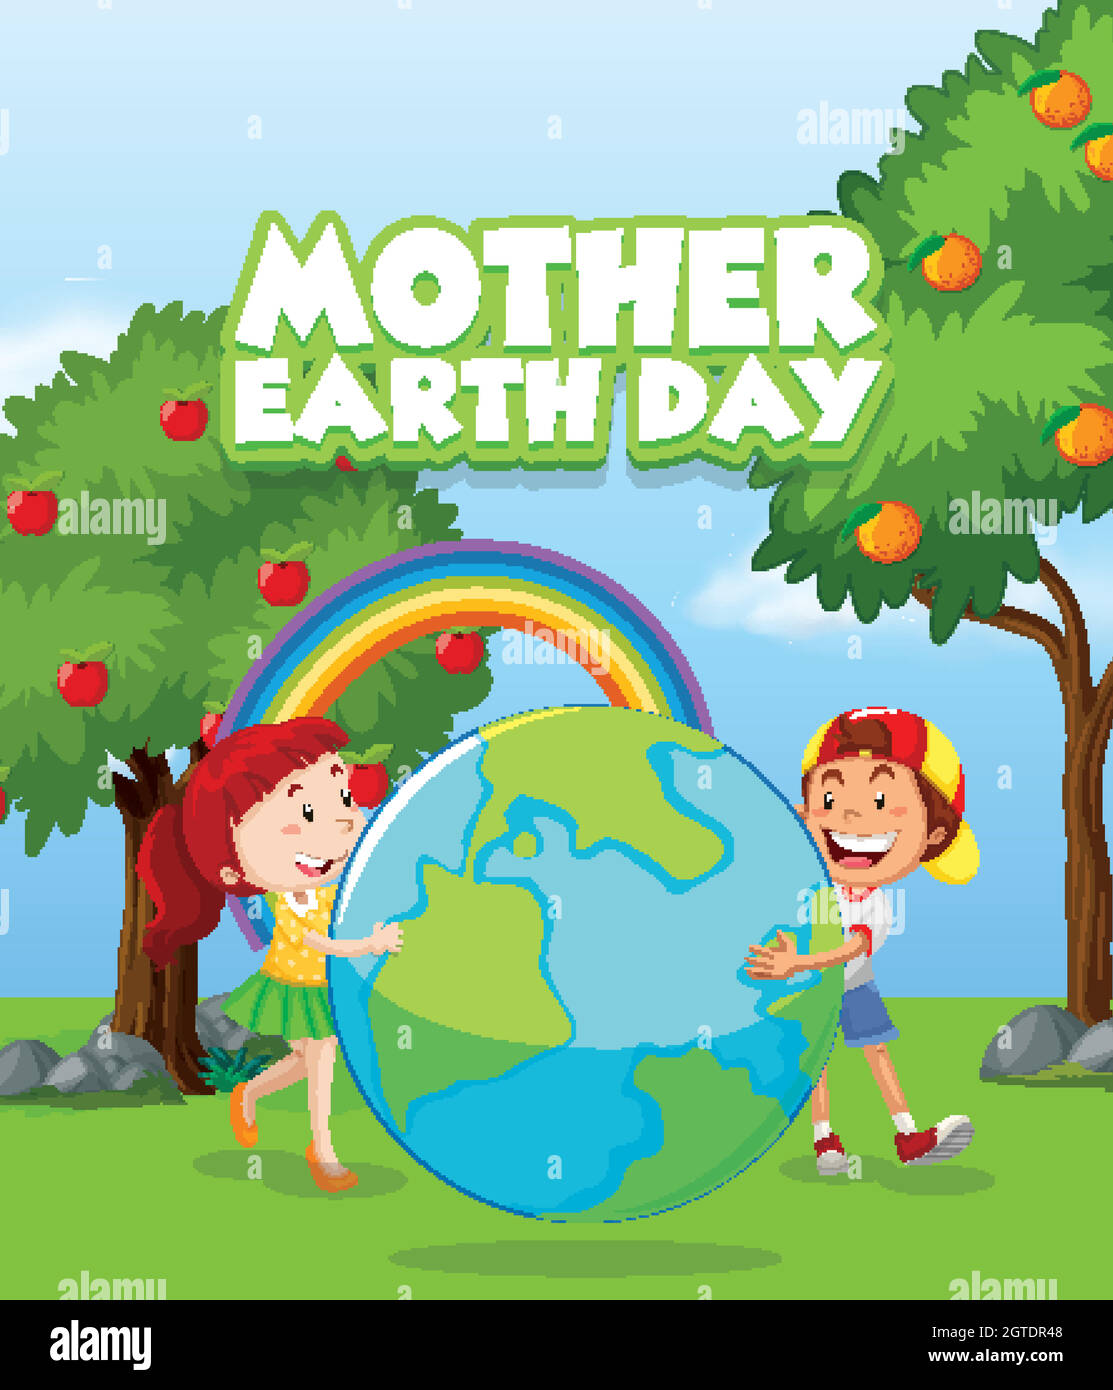 Diseño de póster para el día de la madre tierra con dos niños en el parque Ilustración del Vector